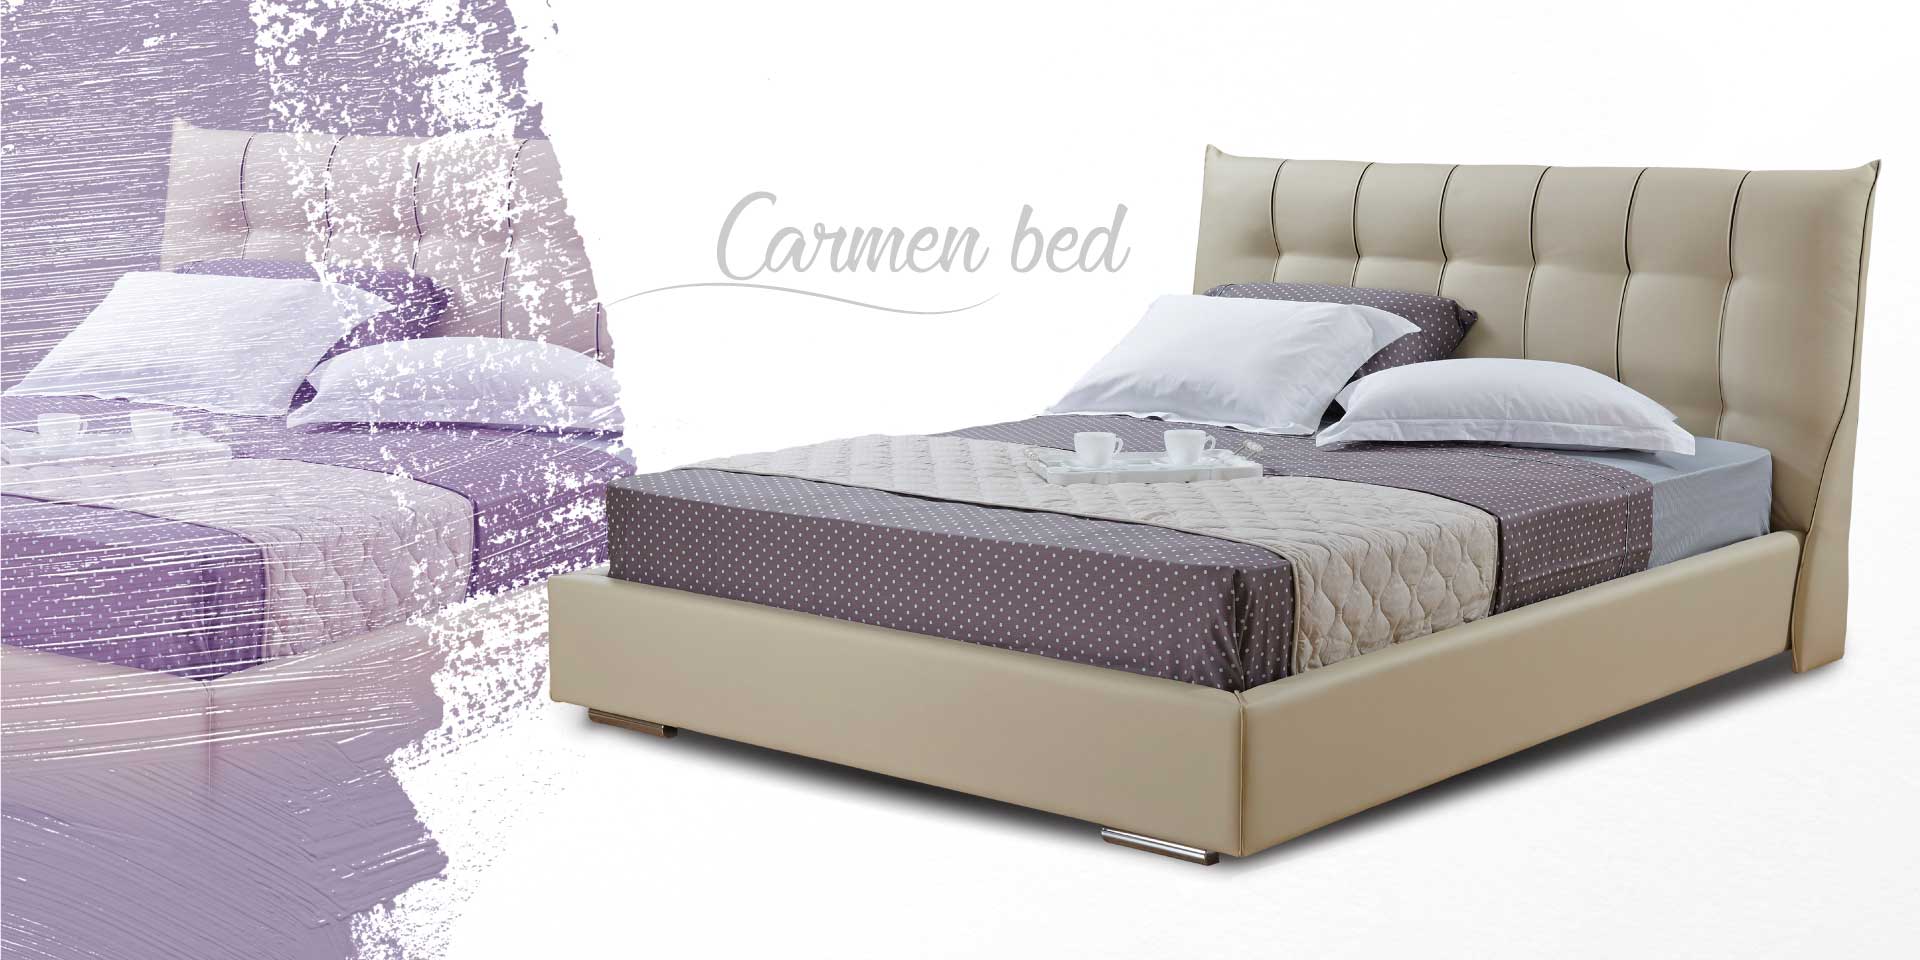 Υφασμάτινο κρεβάτι Carmen